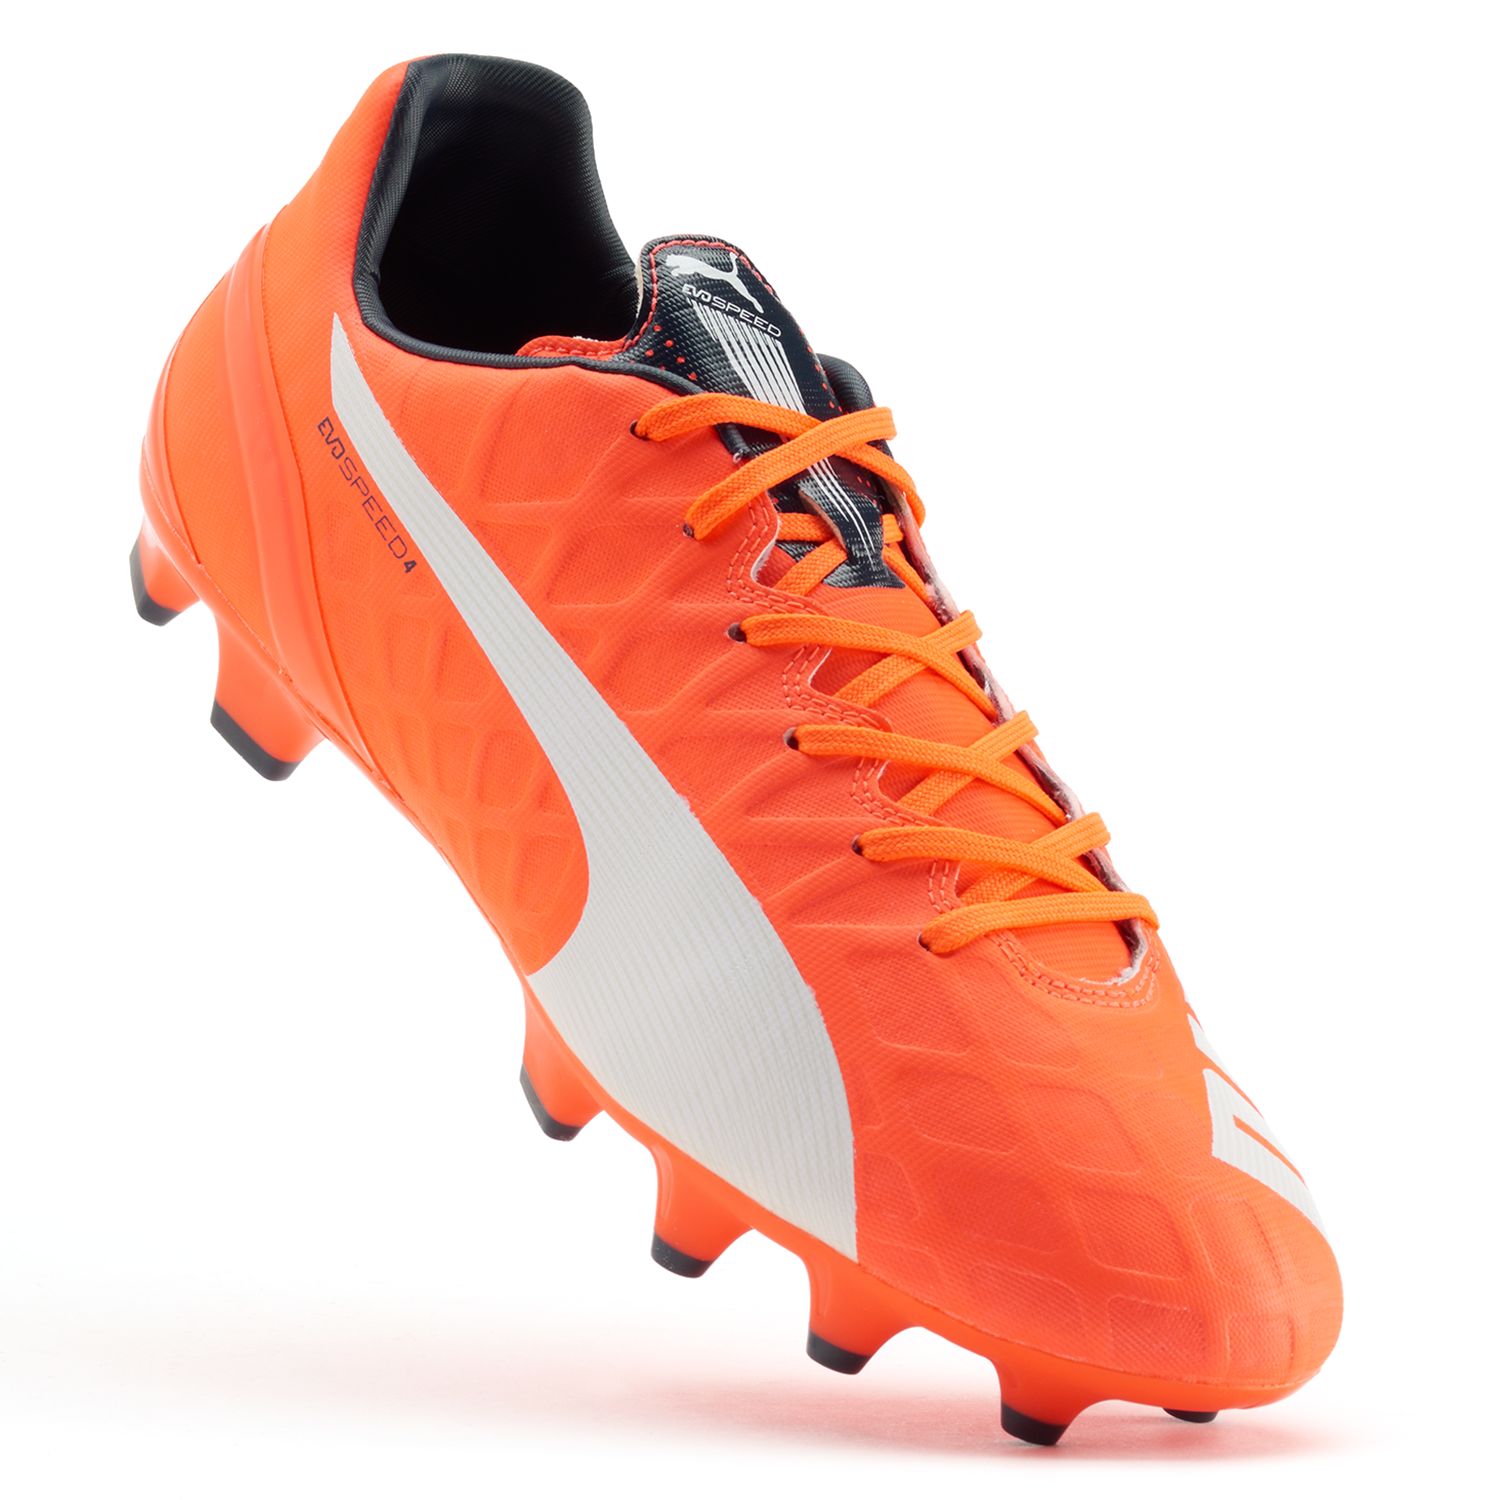 puma men's evospeed 4.4 fg soccer shoe